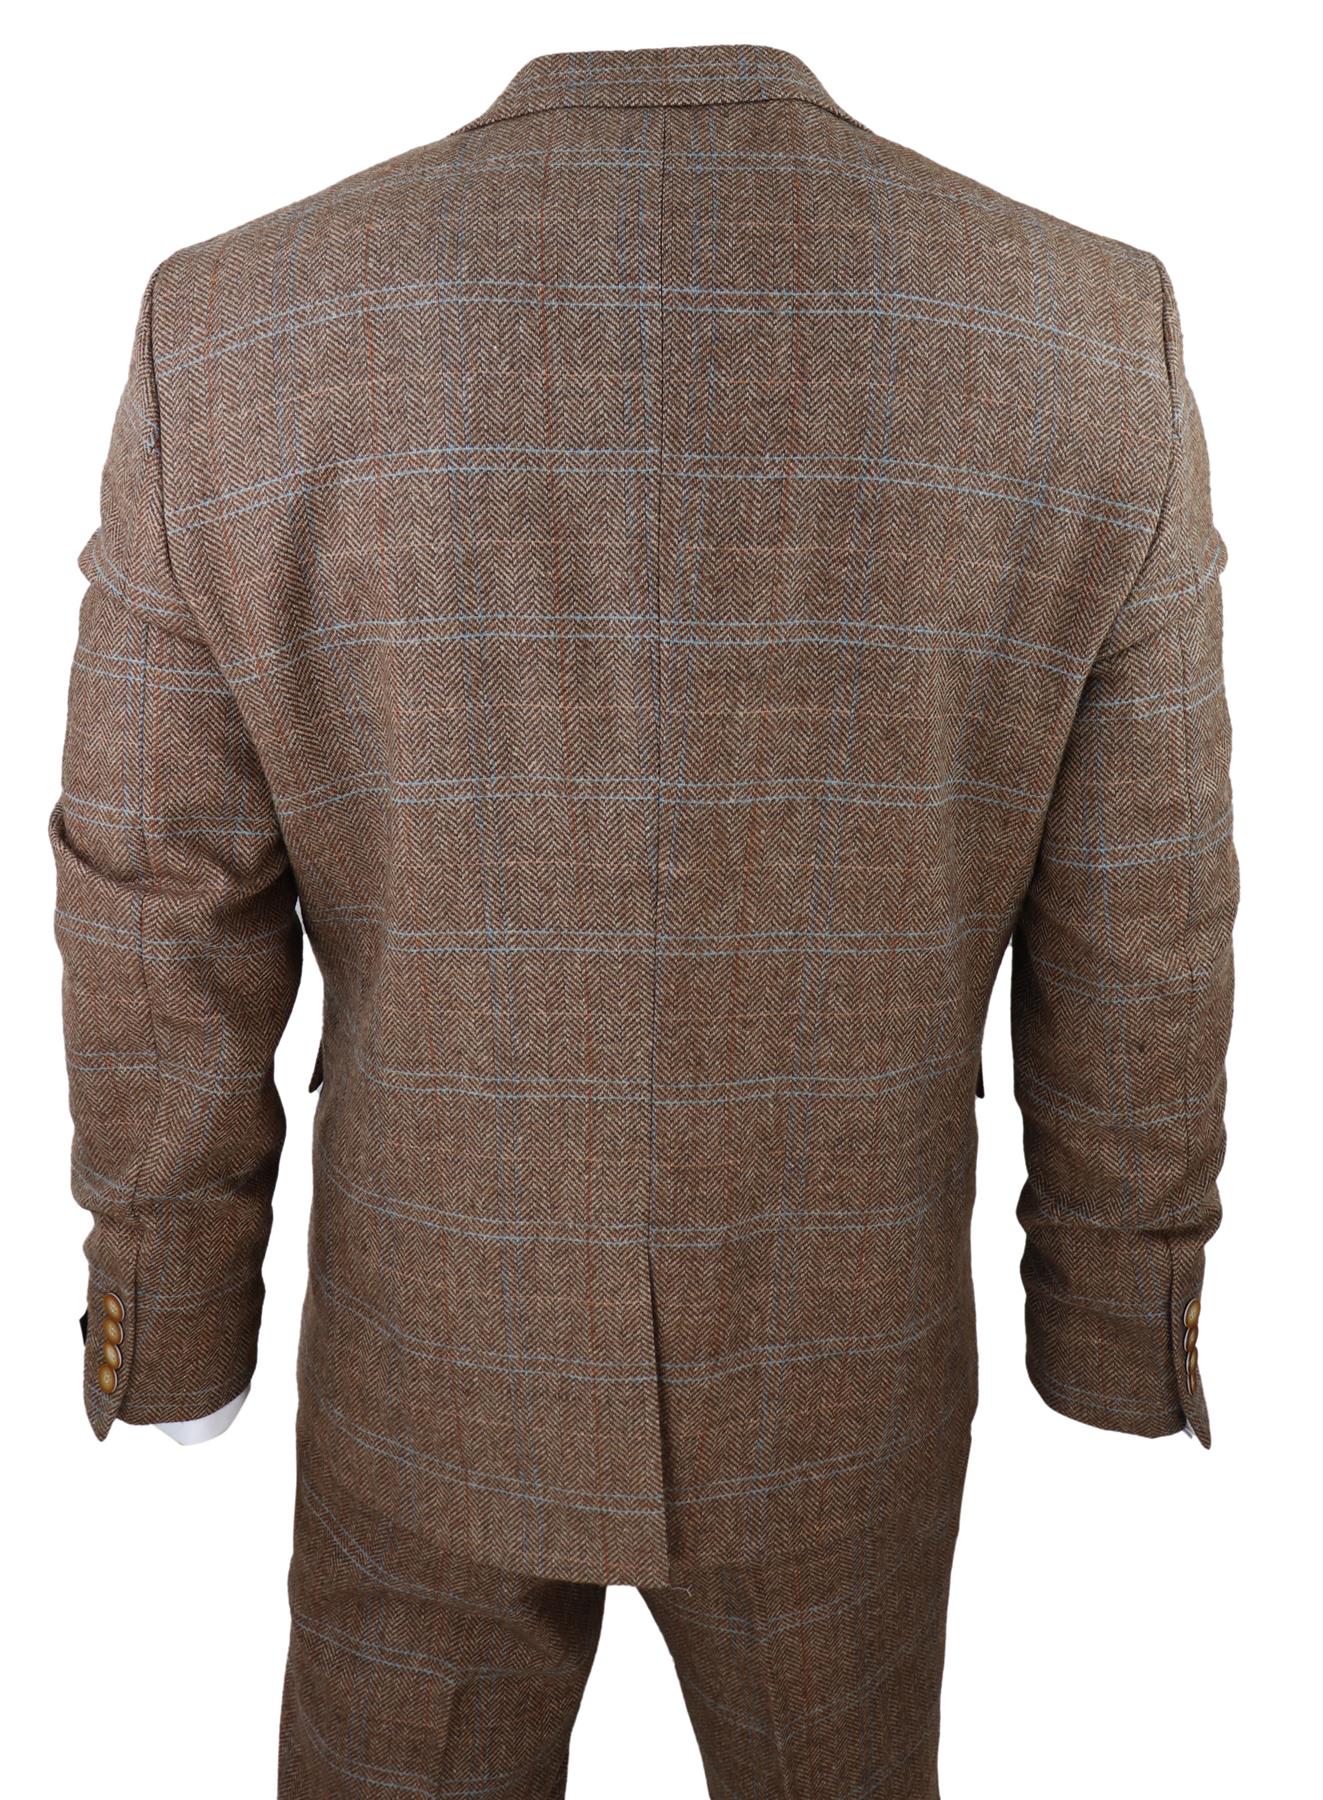 Mens 3 Piece Wool Suit Oak Brown Tweed Herringbone Check Peaky Blinders Gatsby - Upperclass Fashions 